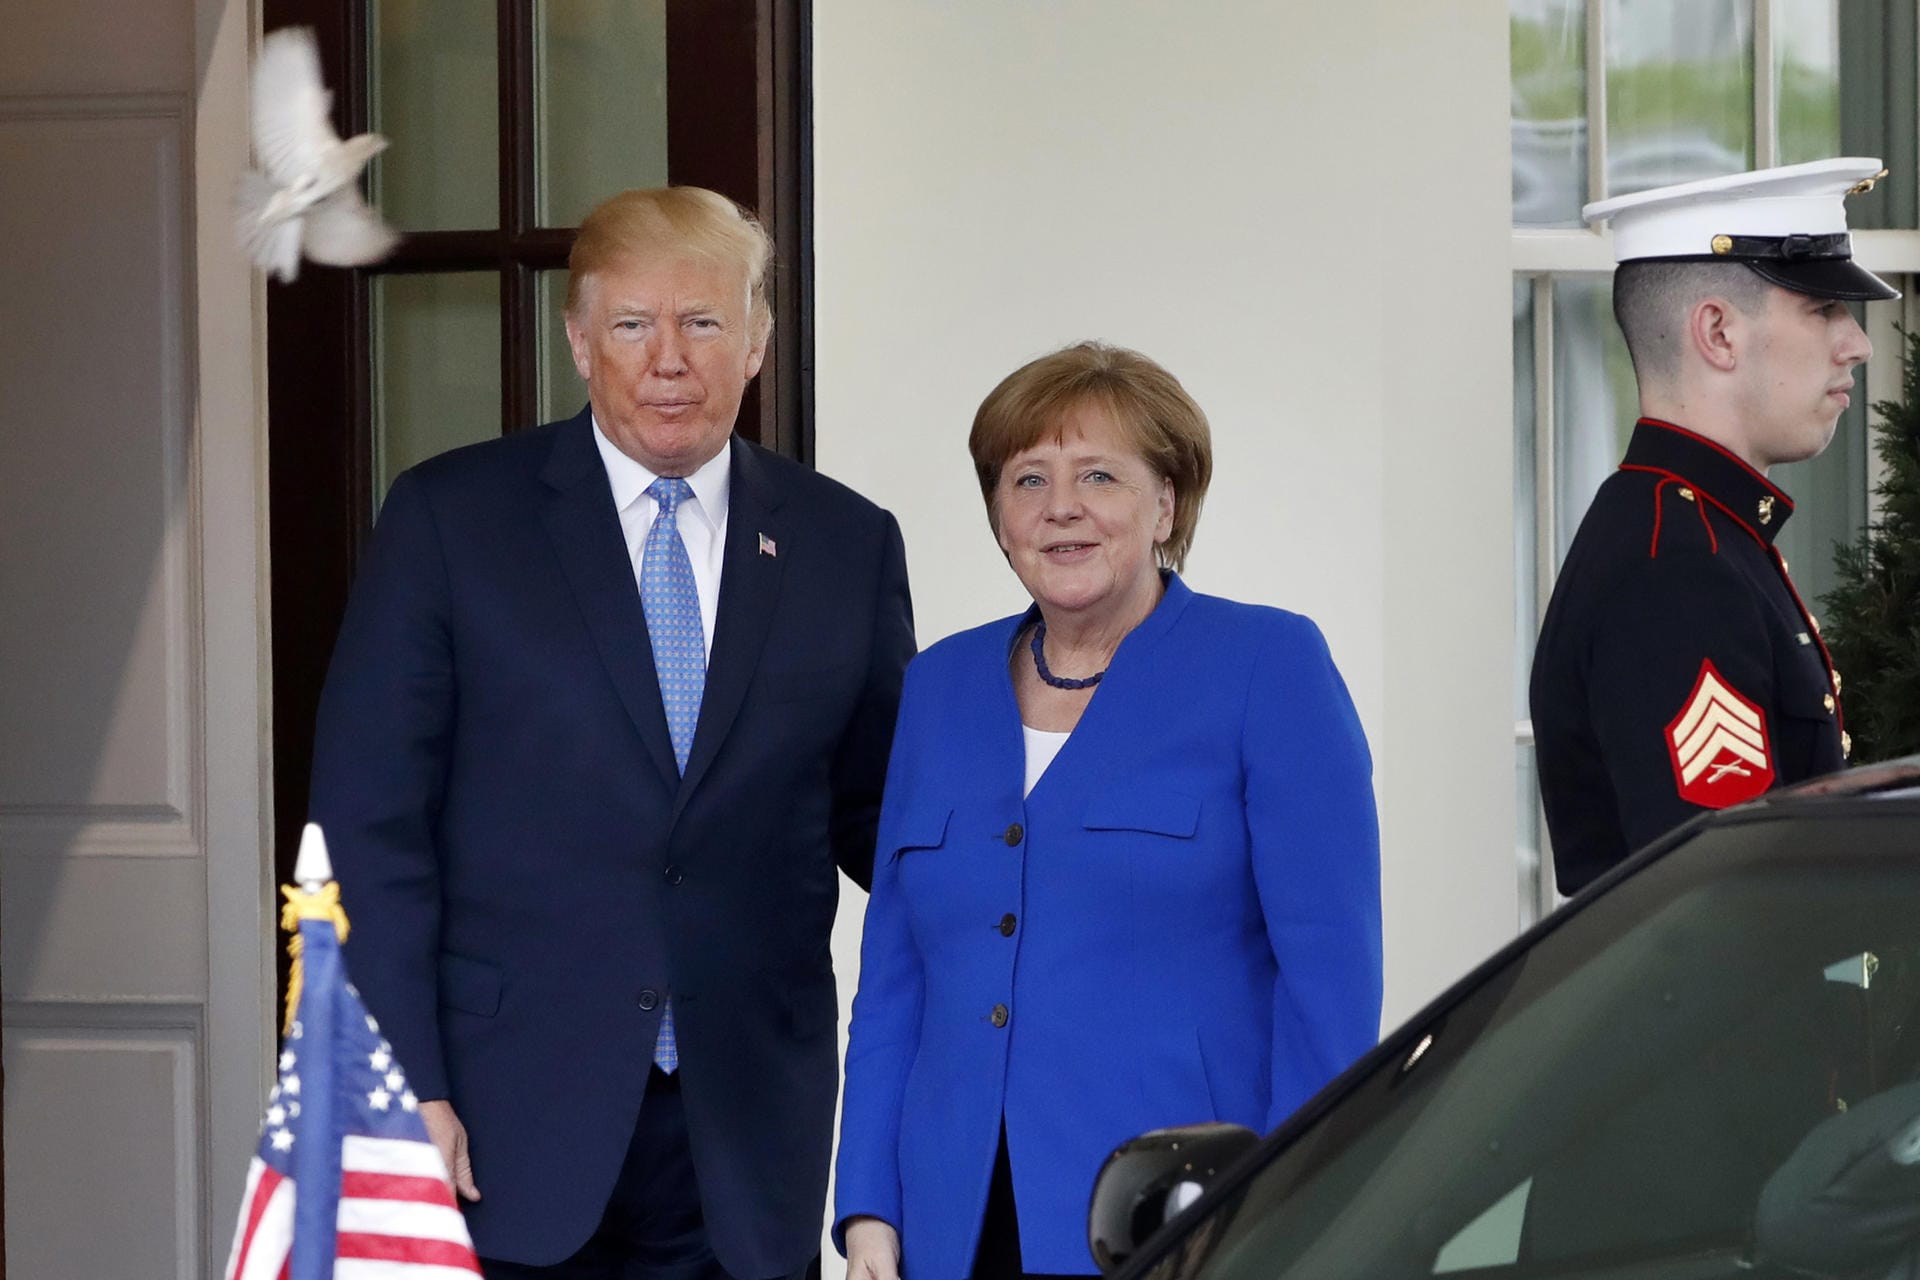 Die beiden Staatsoberhäupter vor dem Betreten des Regierungssitz: Bevor sie ihr Gespräch beginnen, dürfen Fotos gemacht werden. Trump lobt die Beziehung zur Bundeskanzlerin.